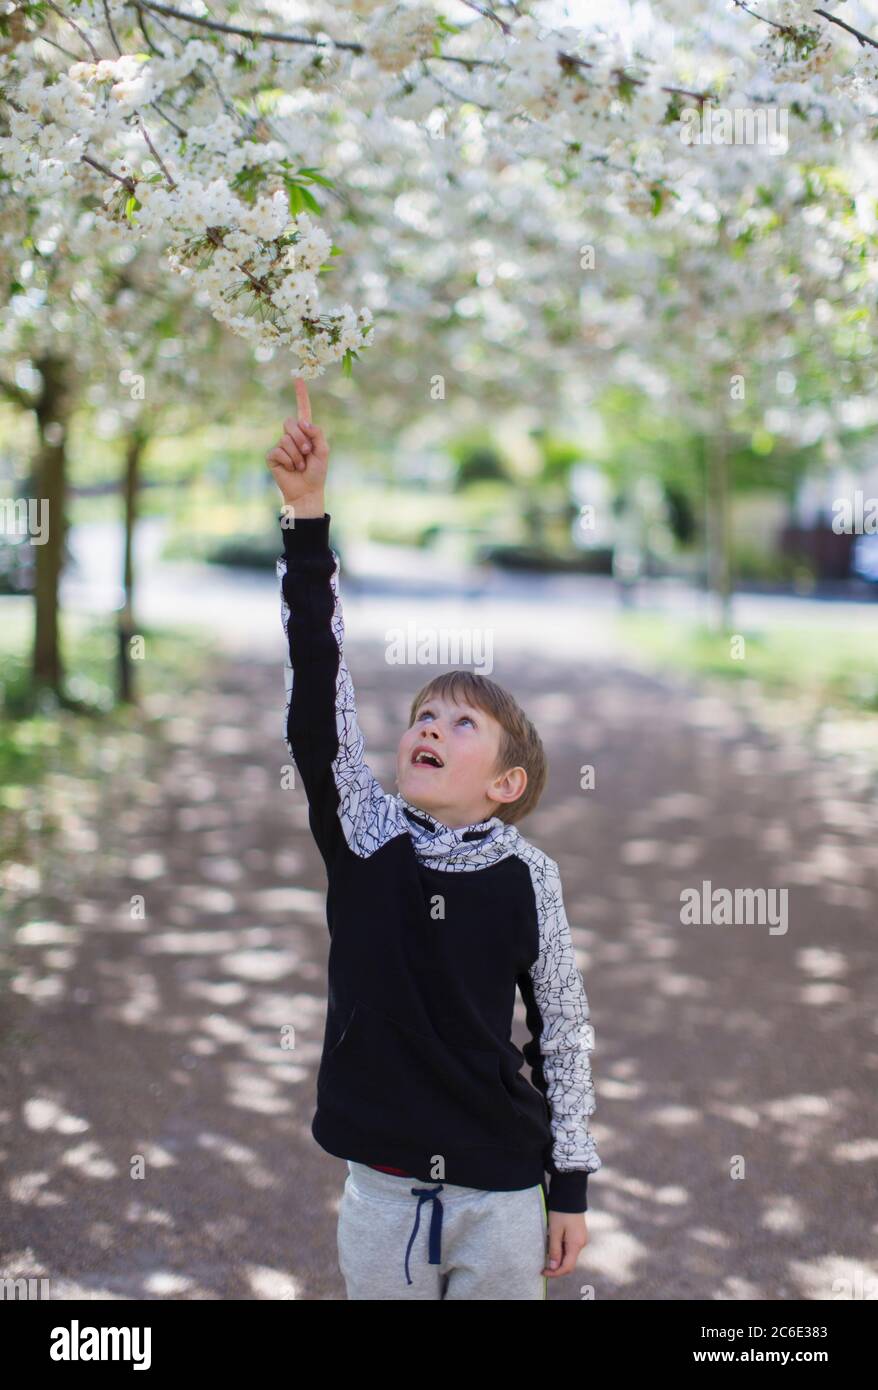 Junge, der nach Apfelblüten auf dem Baum im Park greift Stockfoto